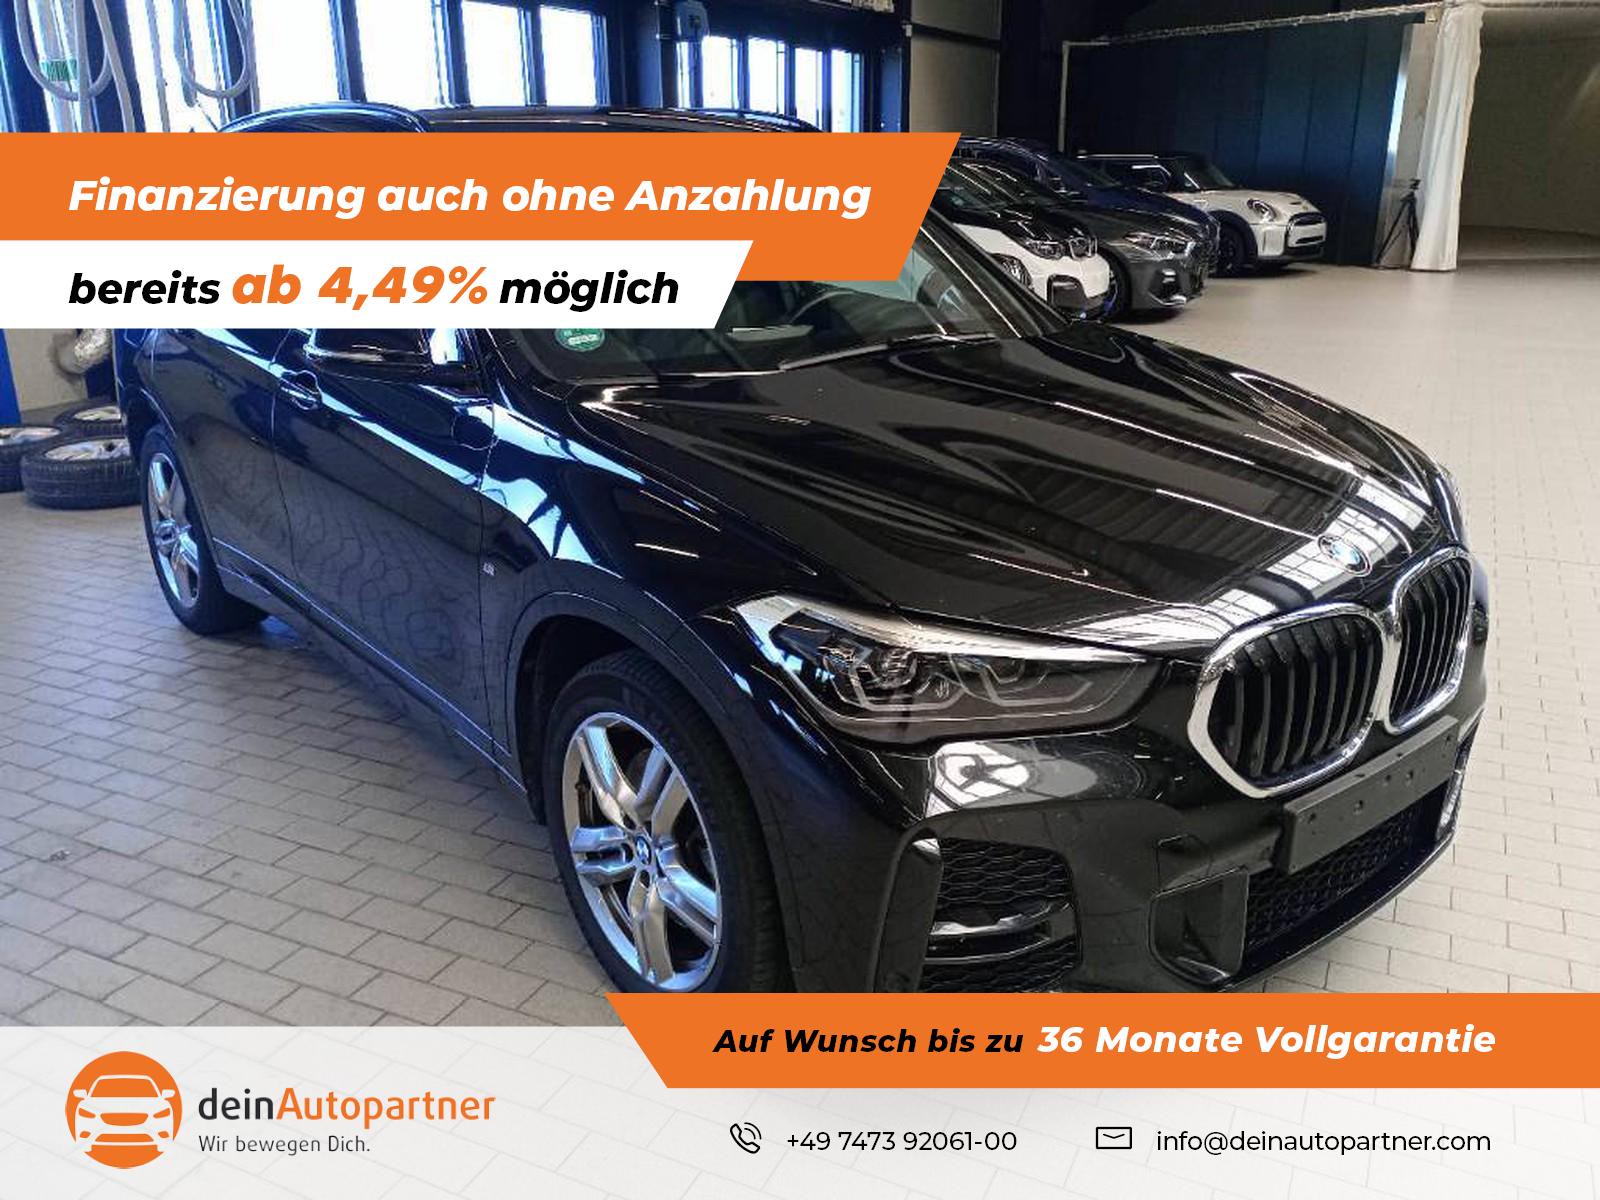 BMW X1 xDrive20d M Sport gebraucht kaufen in Mössingen Preis 29800 eur - Int .Nr.: 1721 VERKAUFT